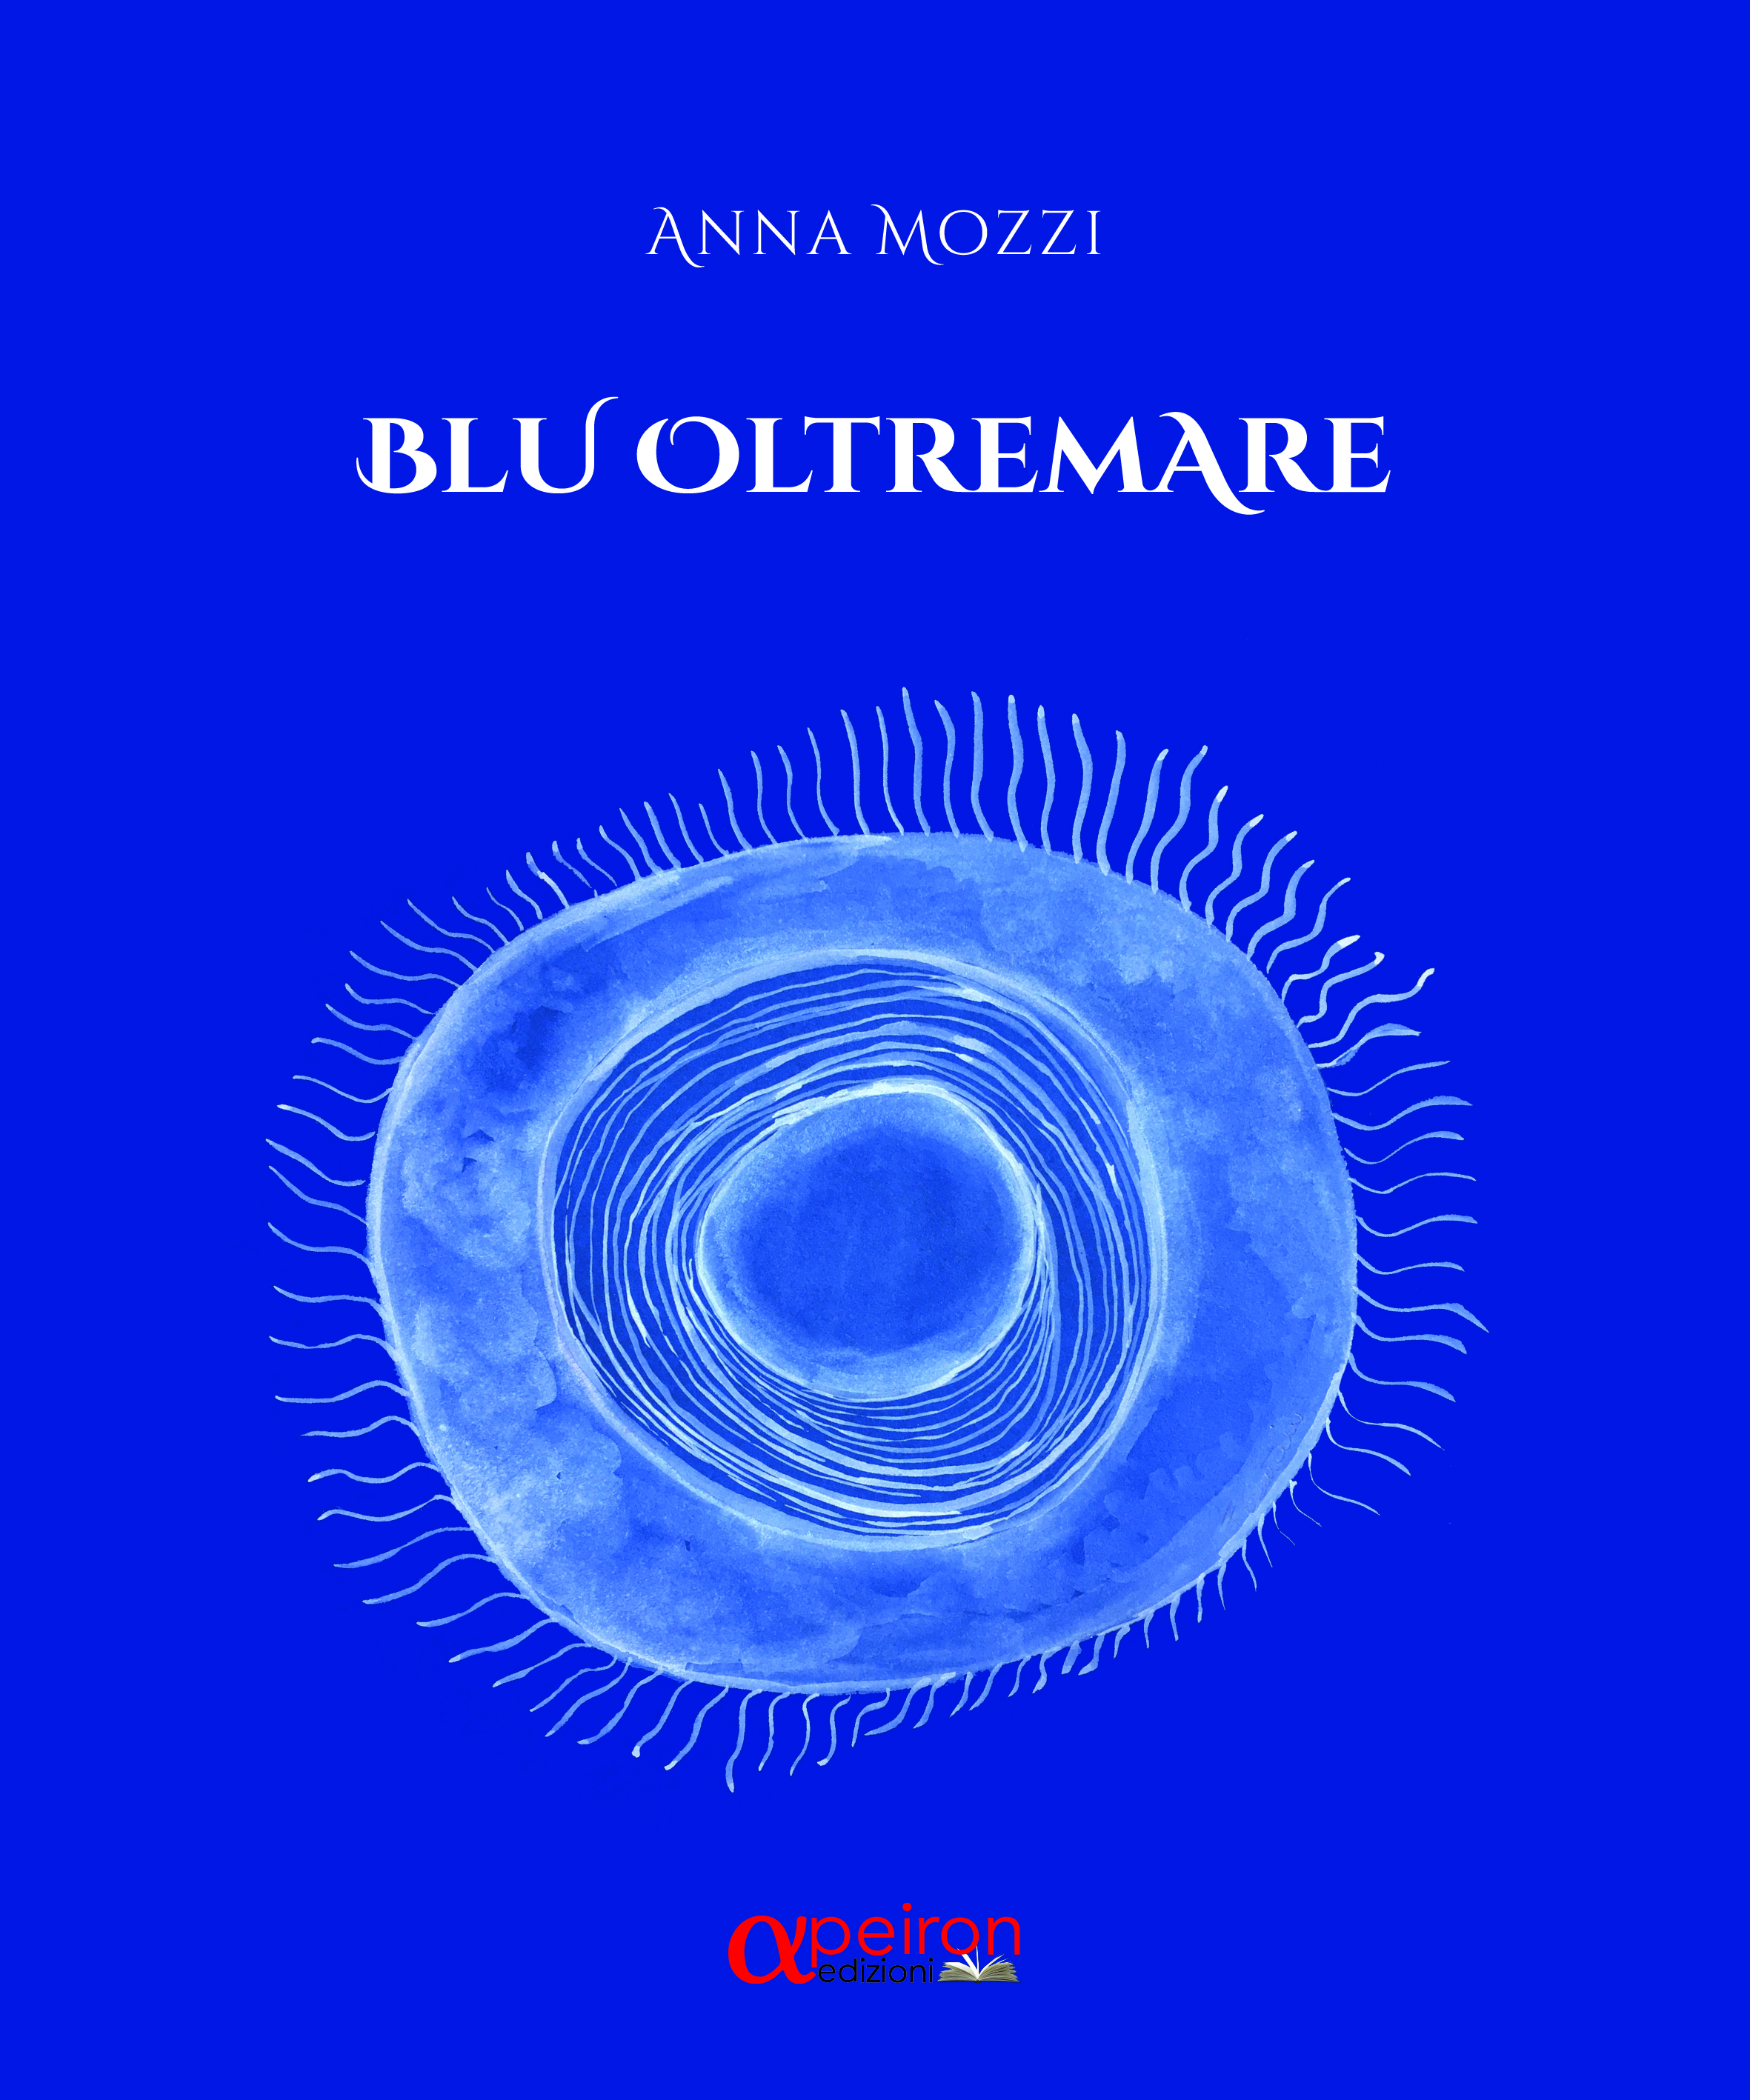 Il “Blu oltremare” di Anna Mozzi approda a Roma